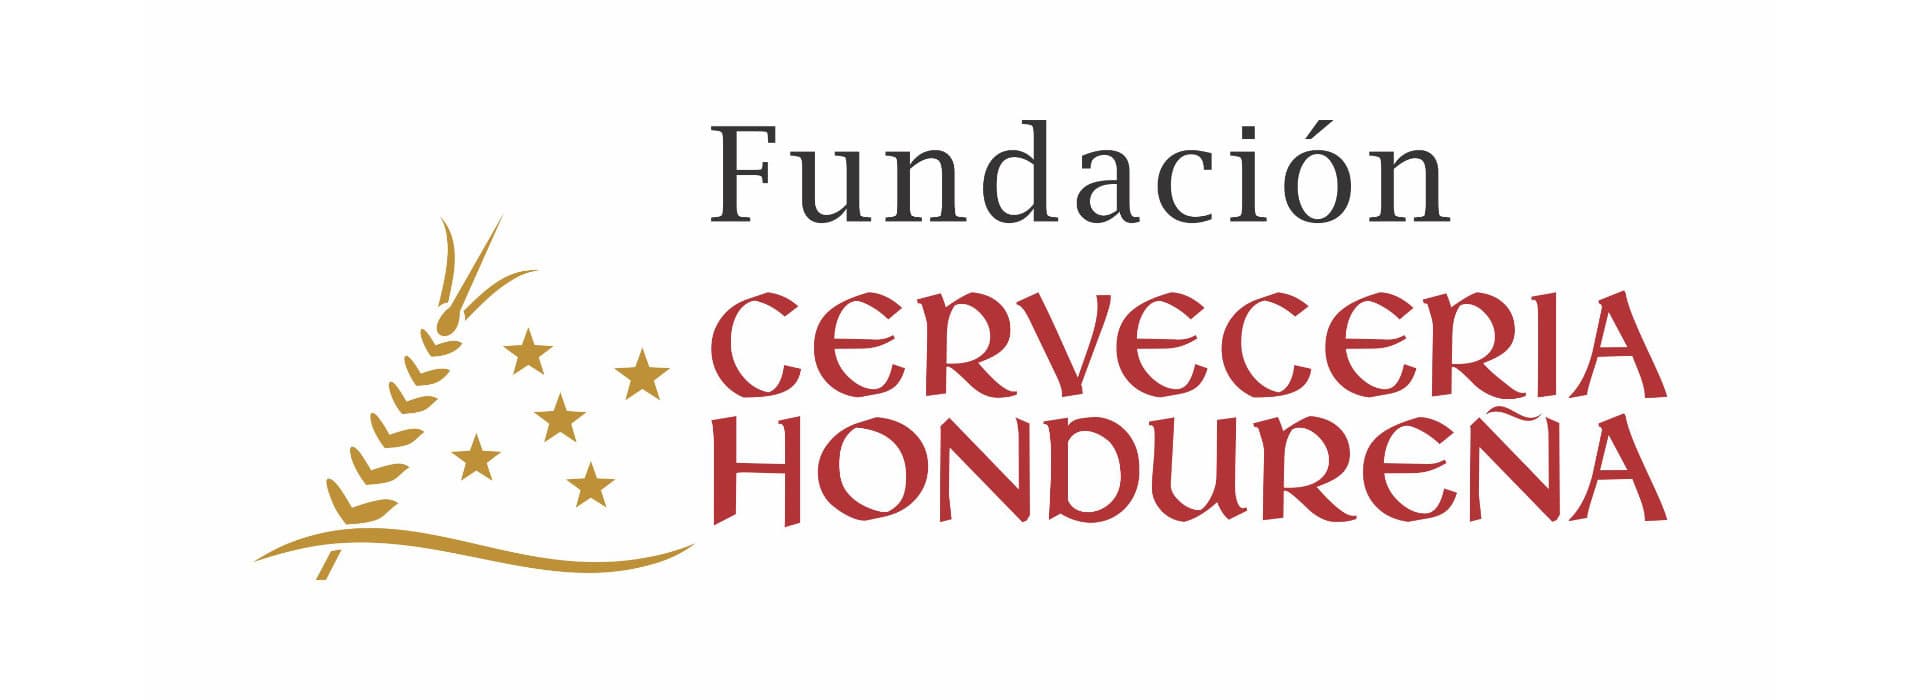 Logo_fundación_Cervecería Hondureña